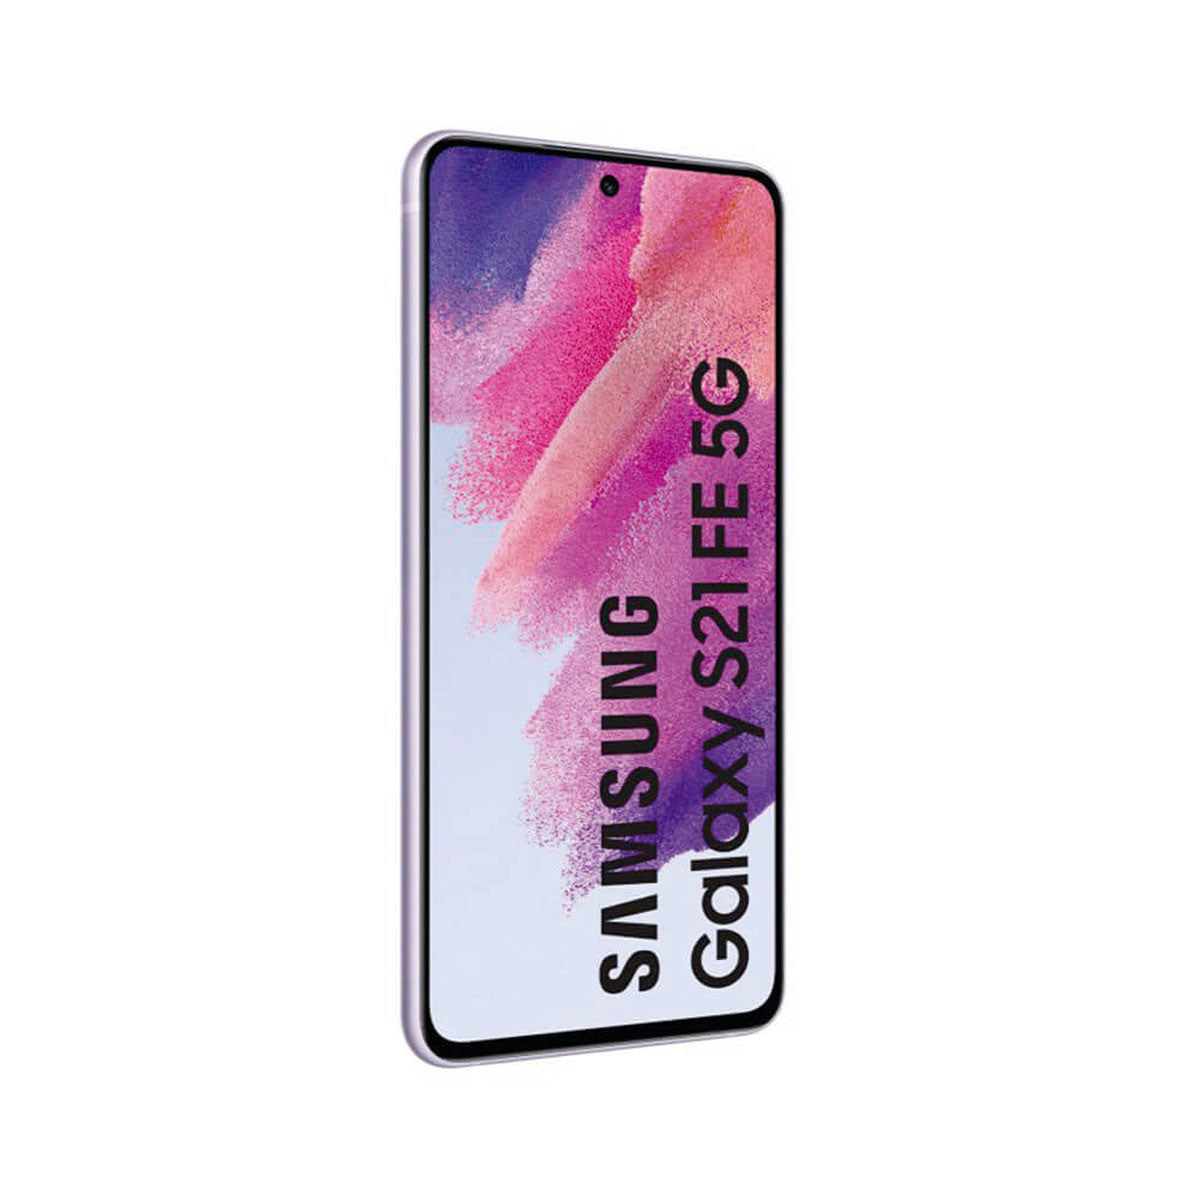 Samsung Galaxy S21 FE 5G 6GB/128GB Violeta (Lavander) Dual SIM G990 Smartphone | Samsung